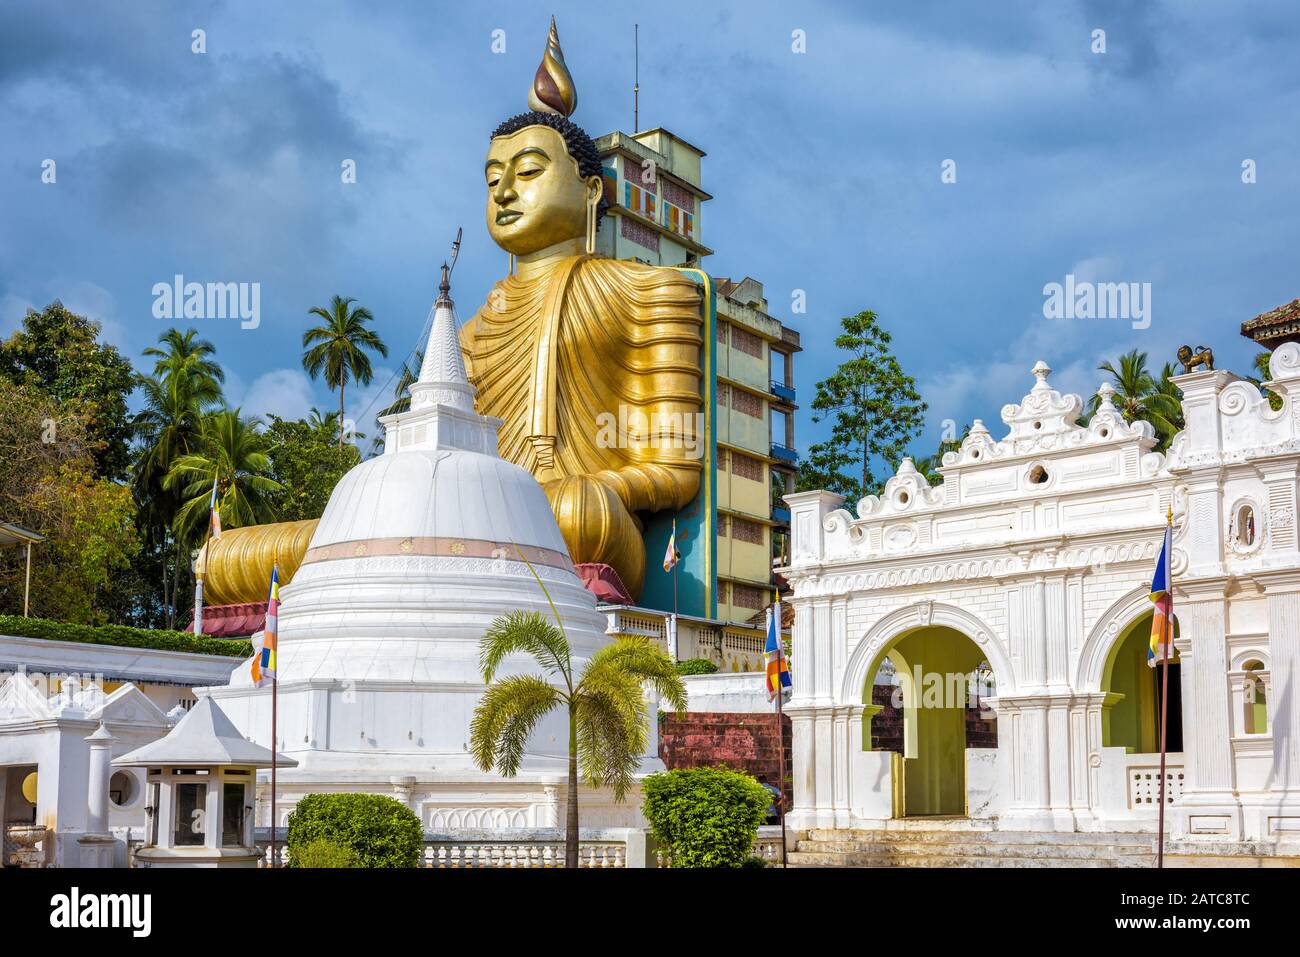 Temple bouddhiste Wewurukannala à Dickwella, Sri Lanka. Une grande statue de Bouddha assise de 50 m de haut est la plus grande du Sri Lanka. Terre historique et religieuse Banque D'Images